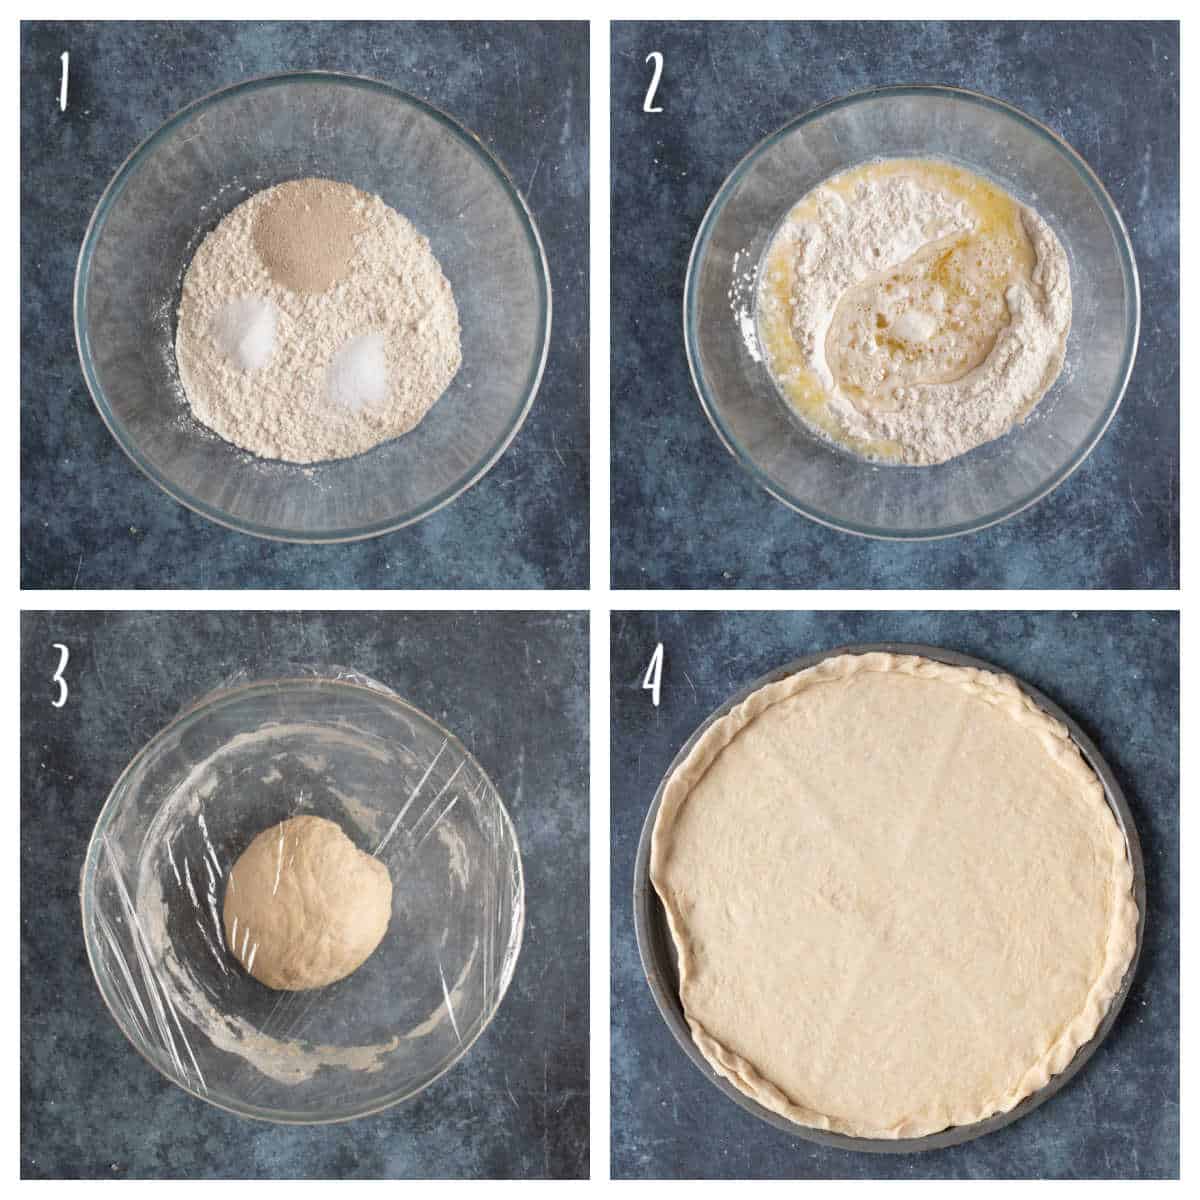 Making pizza dough with plain flour.